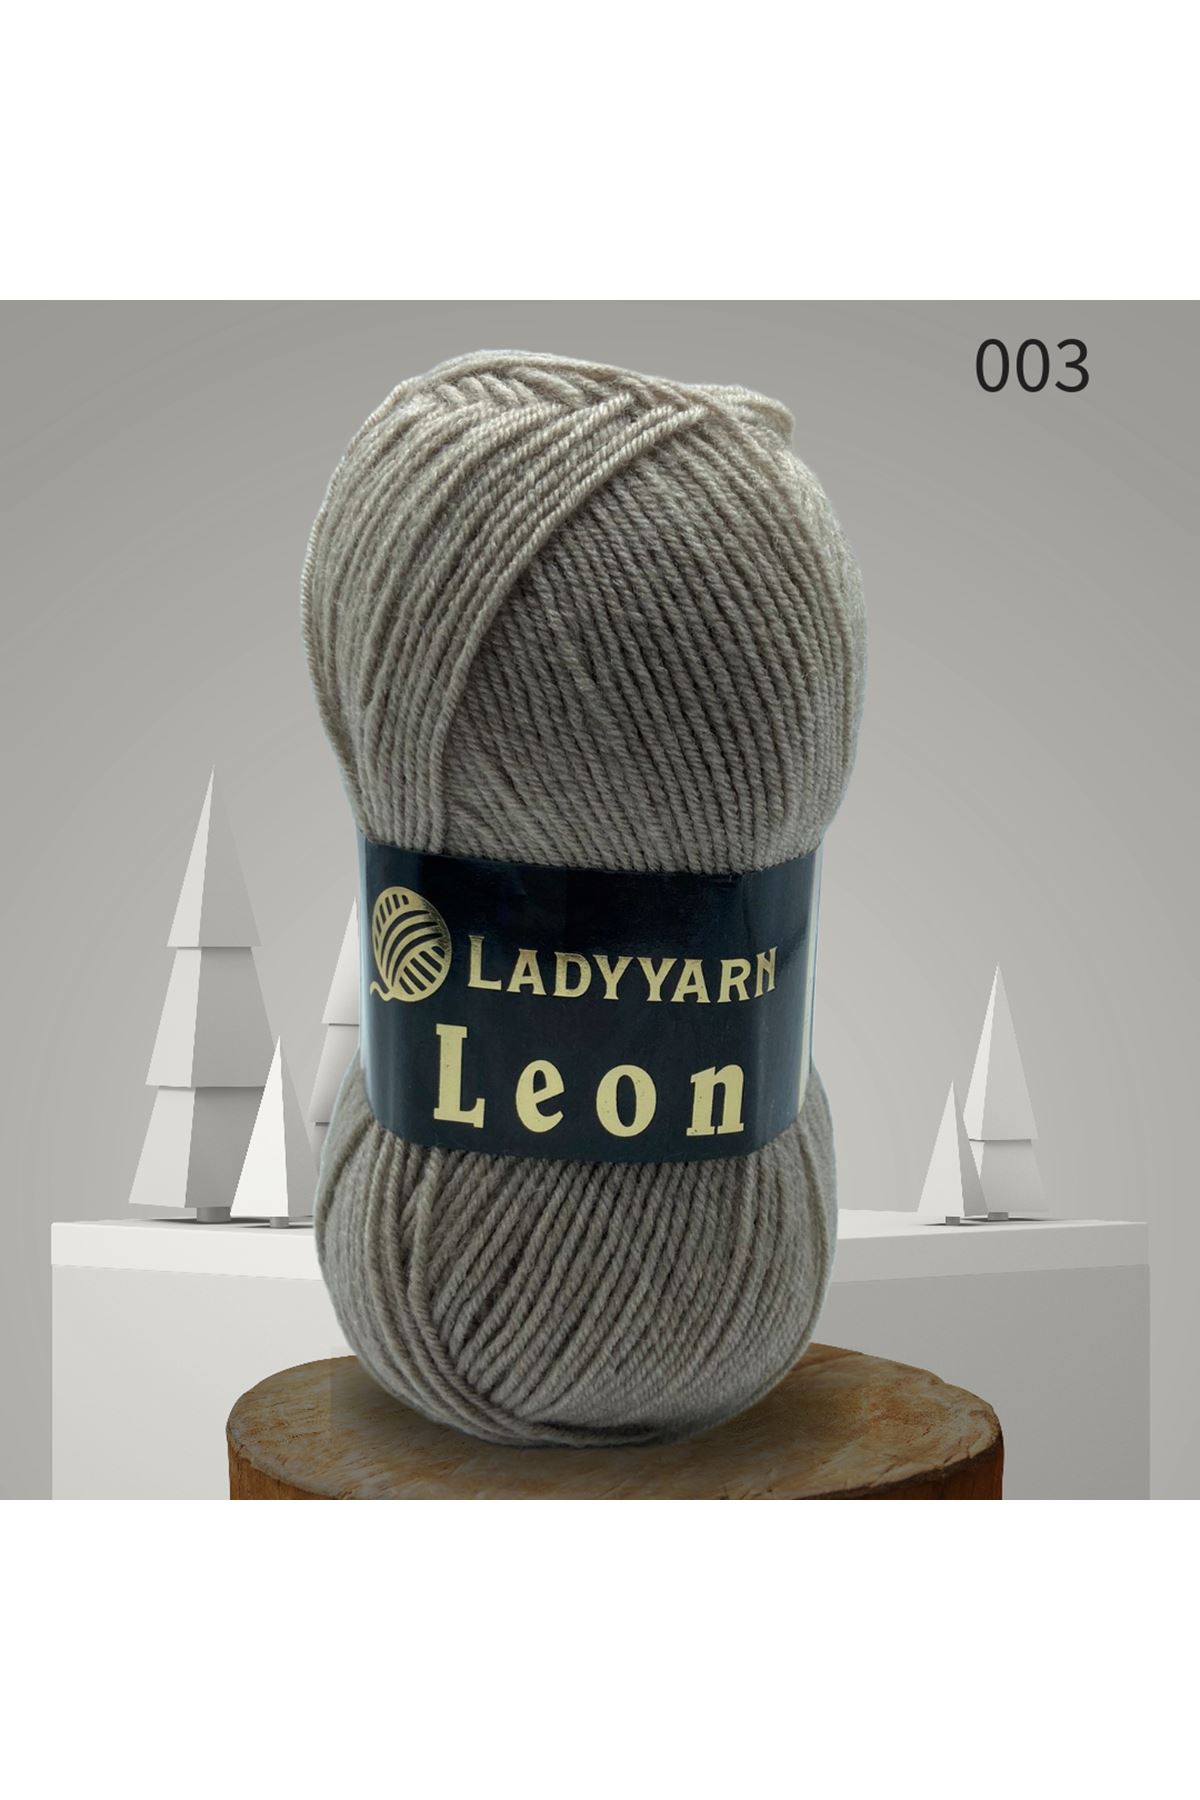 Lady Yarn Leon %49 Yünlü 003 Koyu Bej